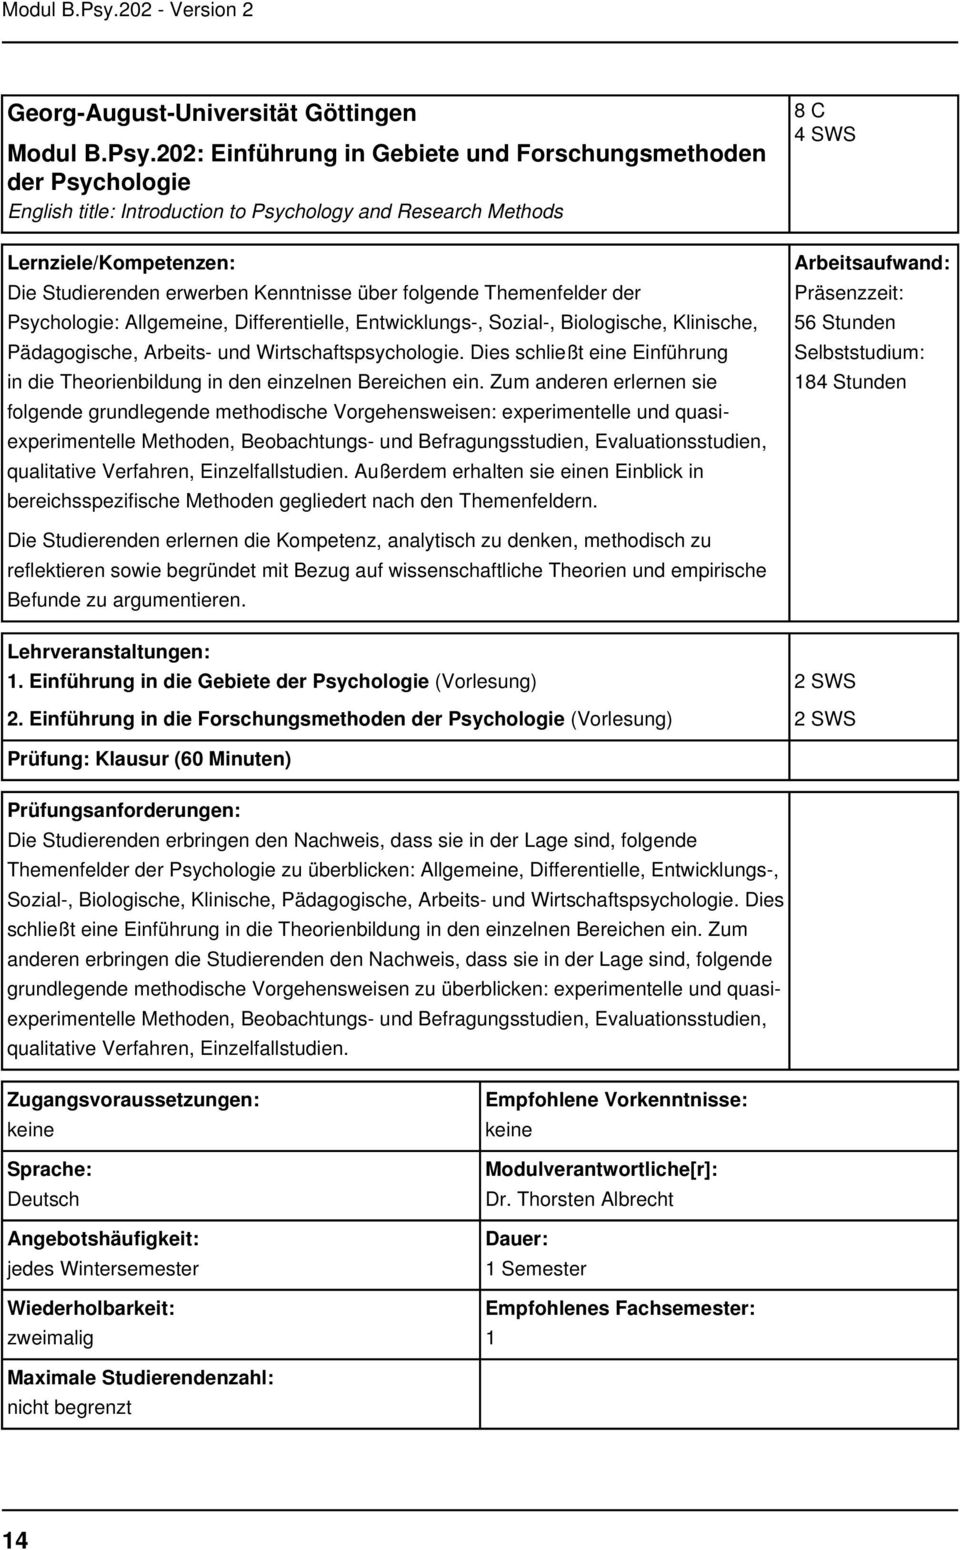 Themenfelder der Psychologie: Allgemeine, Differentielle, Entwicklungs-, Sozial-, Biologische, Klinische, Pädagogische, Arbeits- und Wirtschaftspsychologie.